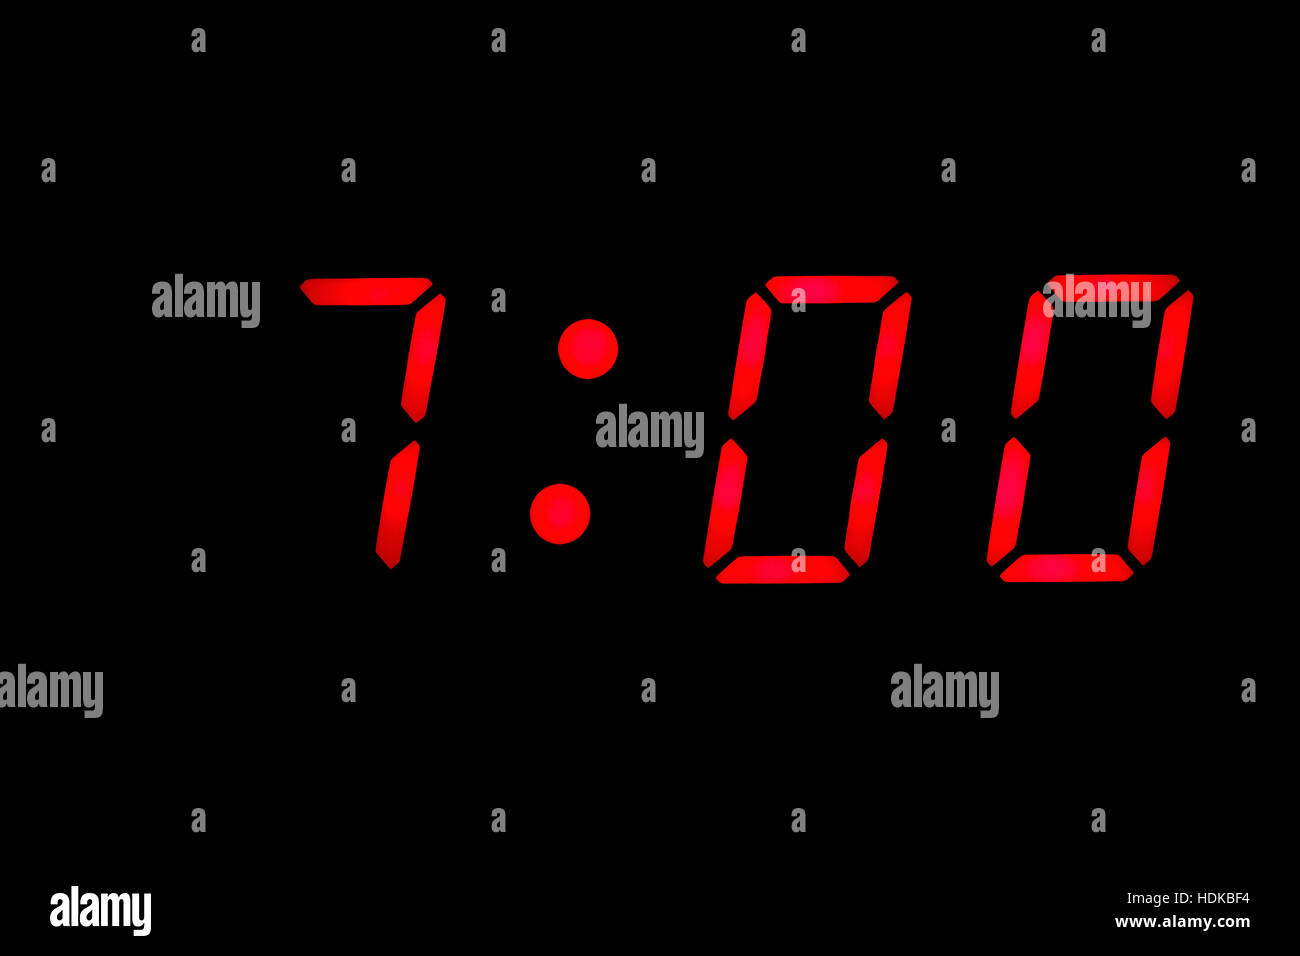 Digital clock closeup displaying 7:00 o'clock Stock Photo